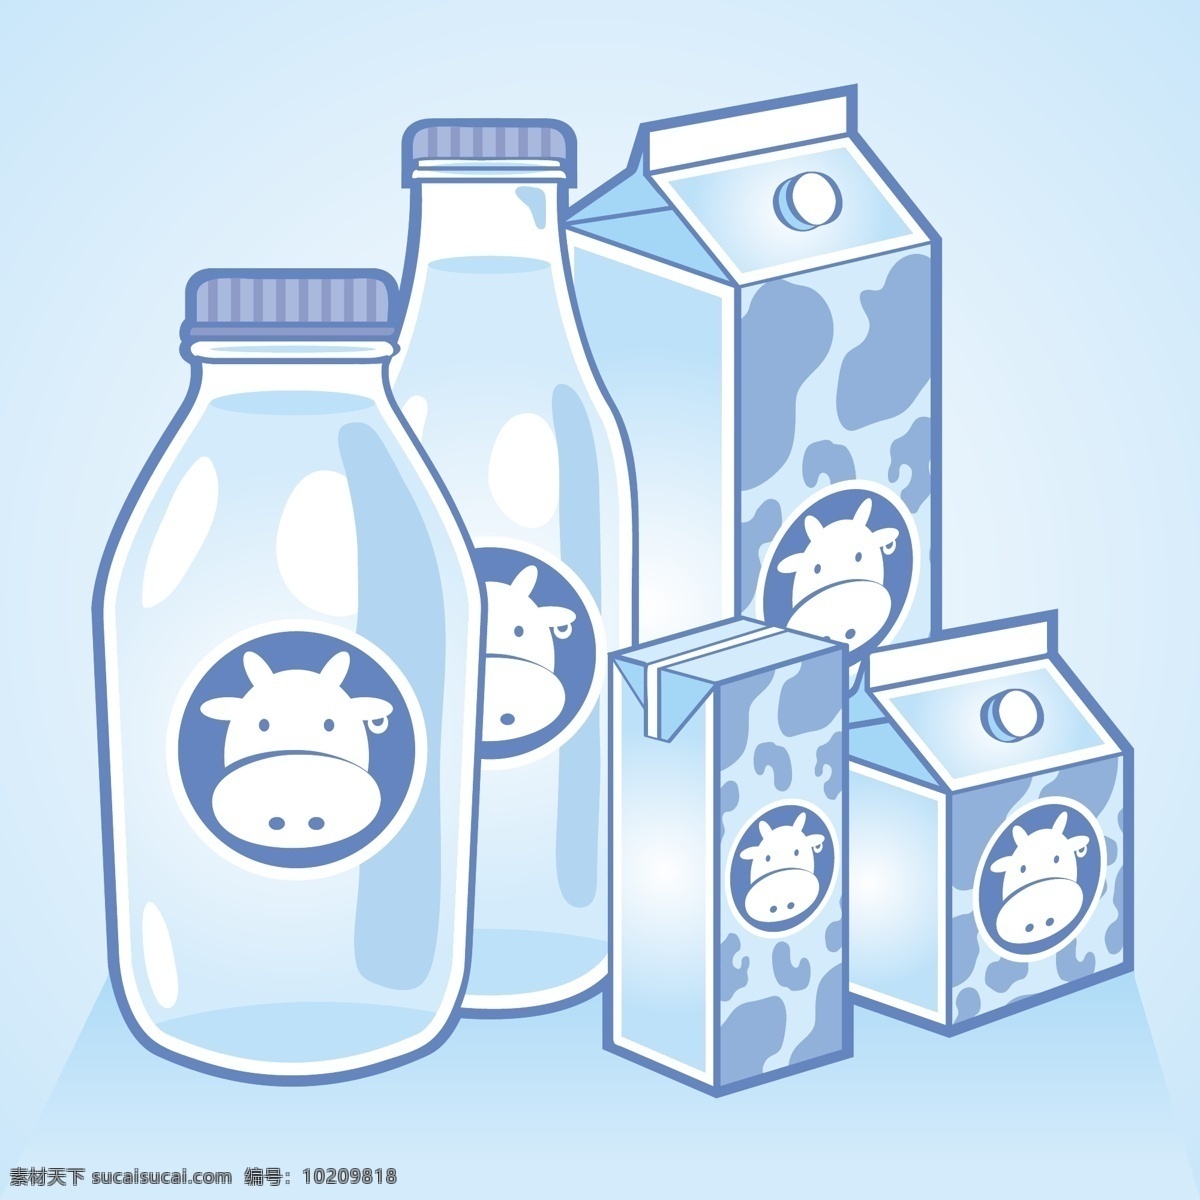 牛奶矢量素材 装饰 标识 高清 源文件 牛奶 瓶子 装饰图案 设计元素 广告装饰图案